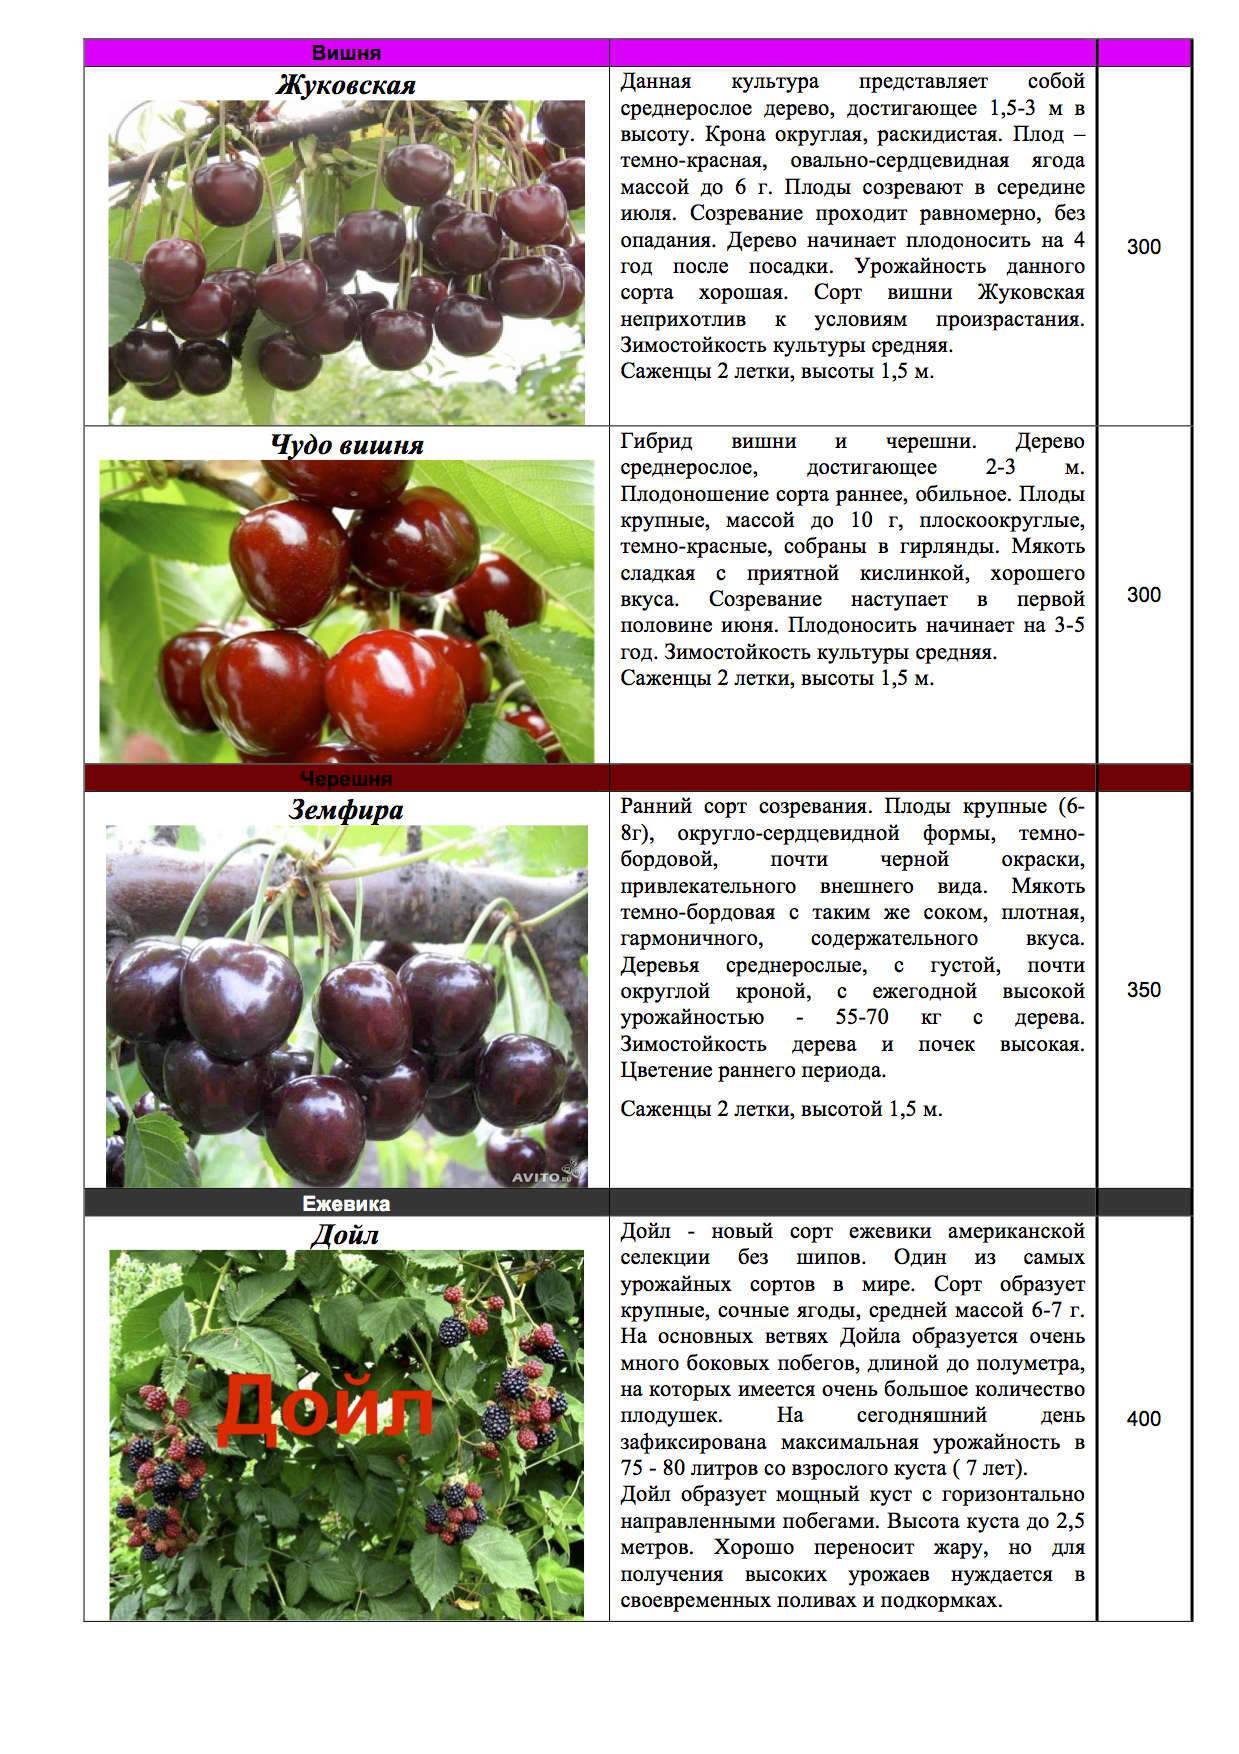 Лучшие высокоурожайные, самоопыляемые и низкорослые сорта вишен для любого региона россии. топ-5 лучших зимостойких вишен